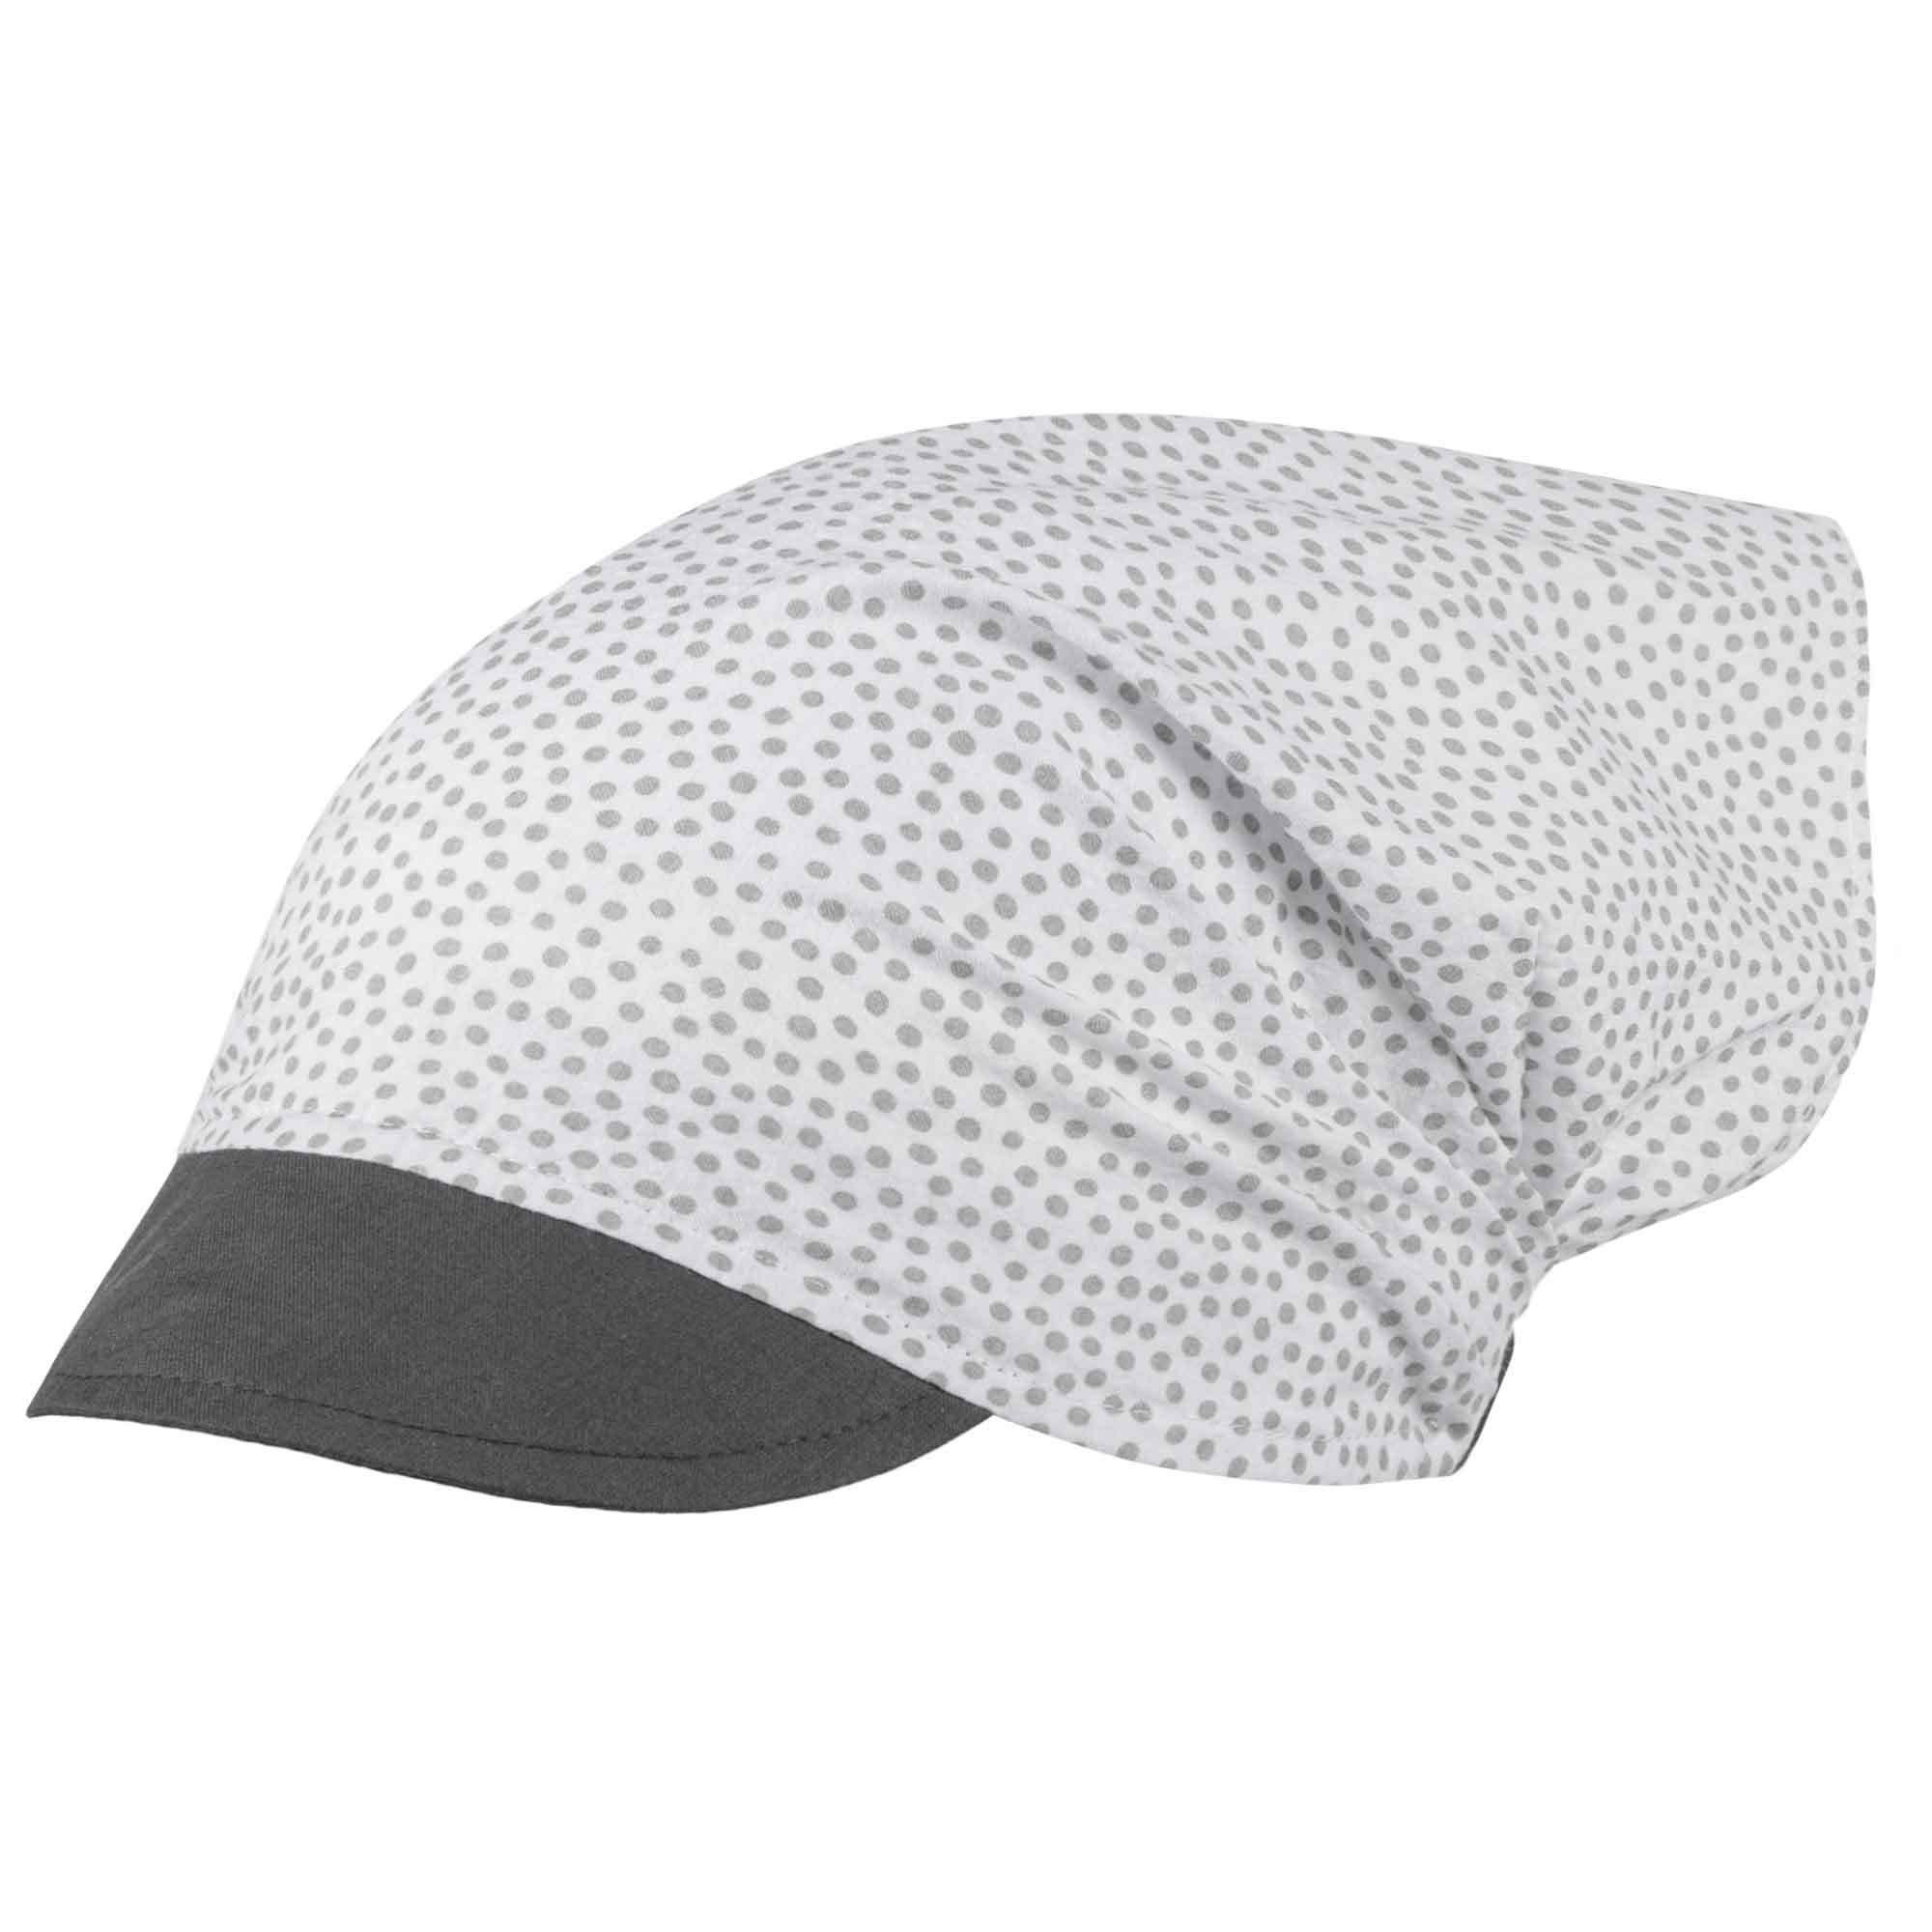 Mädchen Weiß-Dunkelgrau Sommermütze Smarilla Schirmmütze Kopftuch